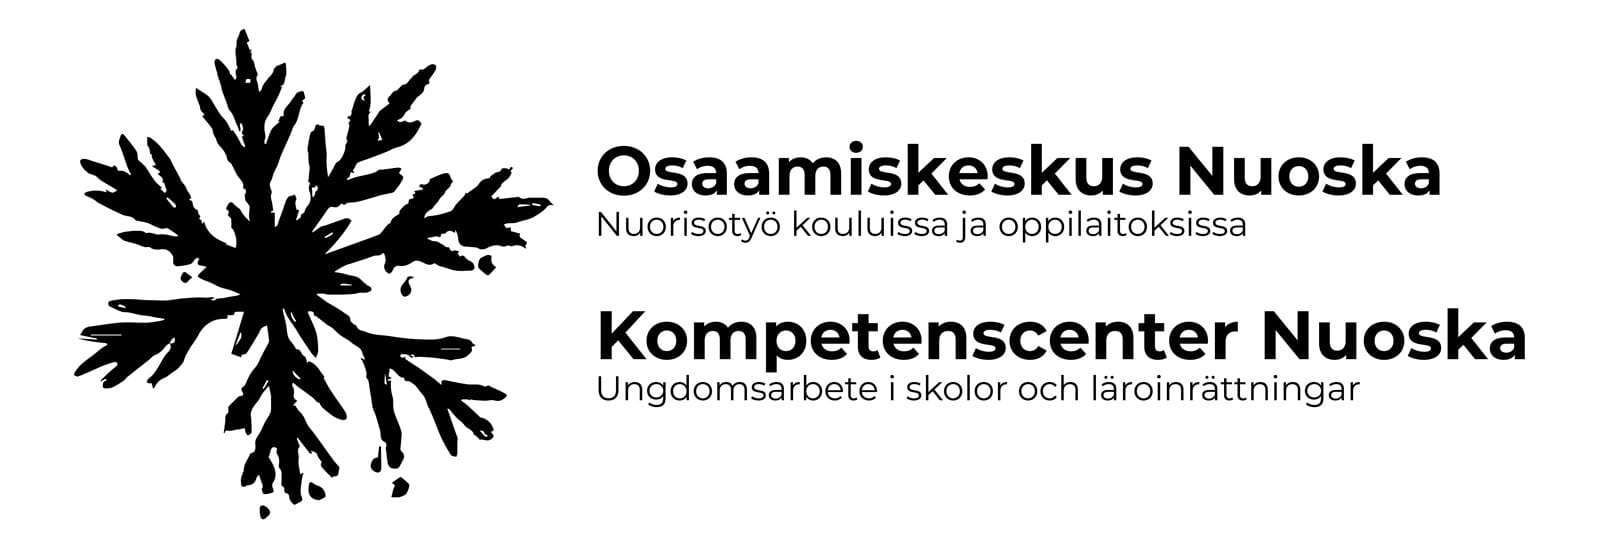 Nuoskan logo. Osaamiskeskus Nuoska. Nuorisotyö kouluissa ja oppilaitoksissa. Kompetenscenter Nuoska. Ungdomsarbete i skolor och läroinrättningar.